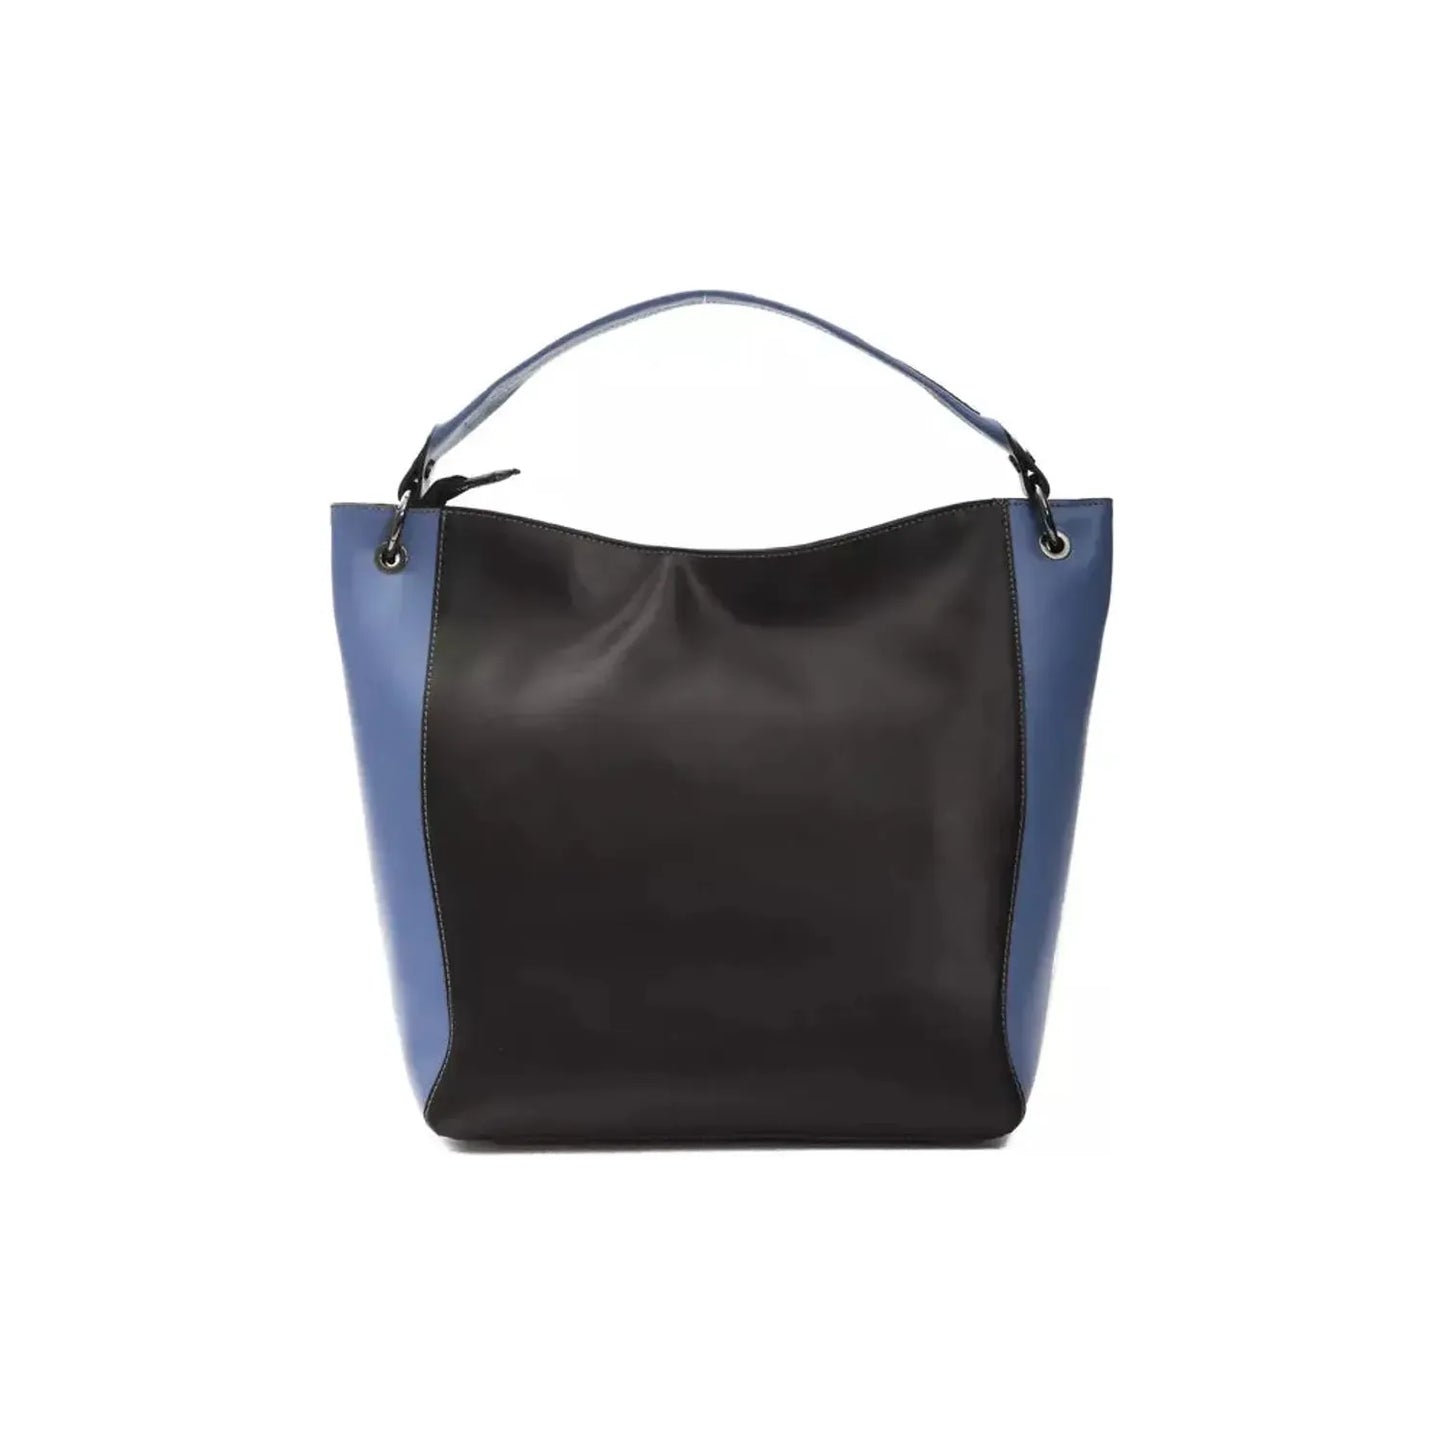 Pompei Donatella Chic Black Leather Shoulder Bag black-leather-shoulder-bag-1 stock_product_image_5831_823900829-22-1542d51e-c71.webp